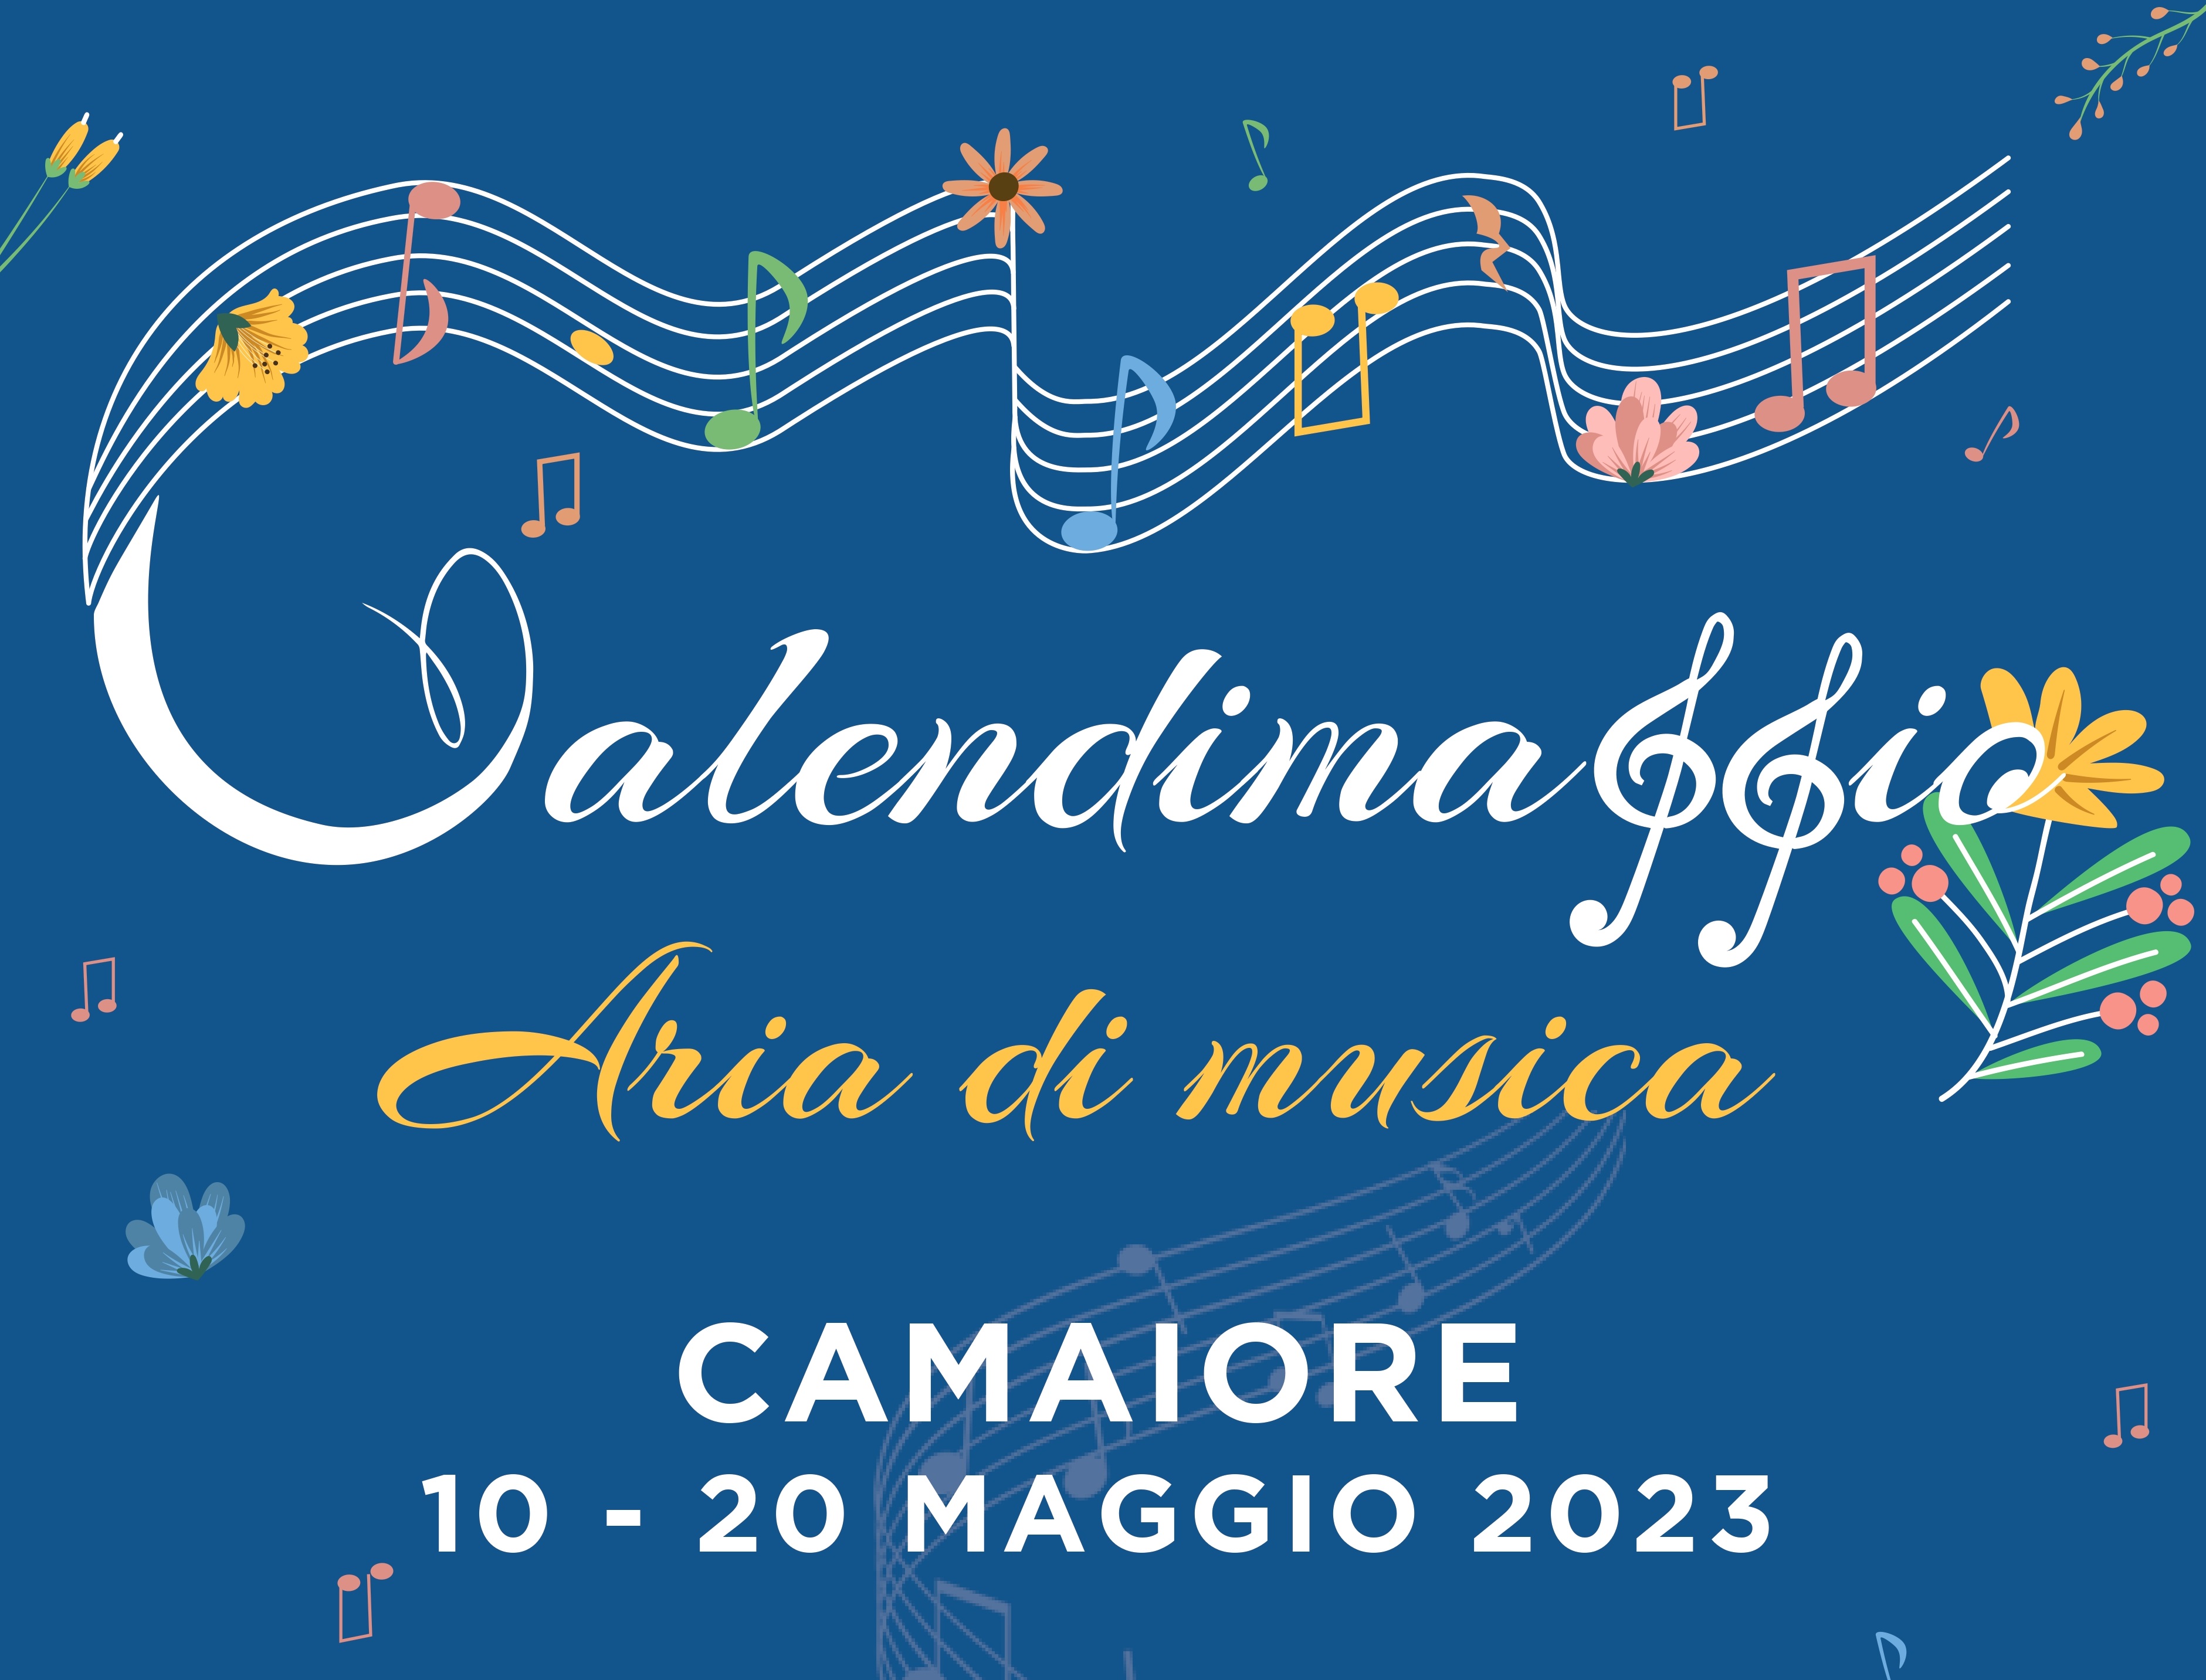 A Camaiore si respira aria di musica con Calendimaggio: il grande evento dal 10 al 20 maggio in Centro Storico per celebrare la musica e la primavera